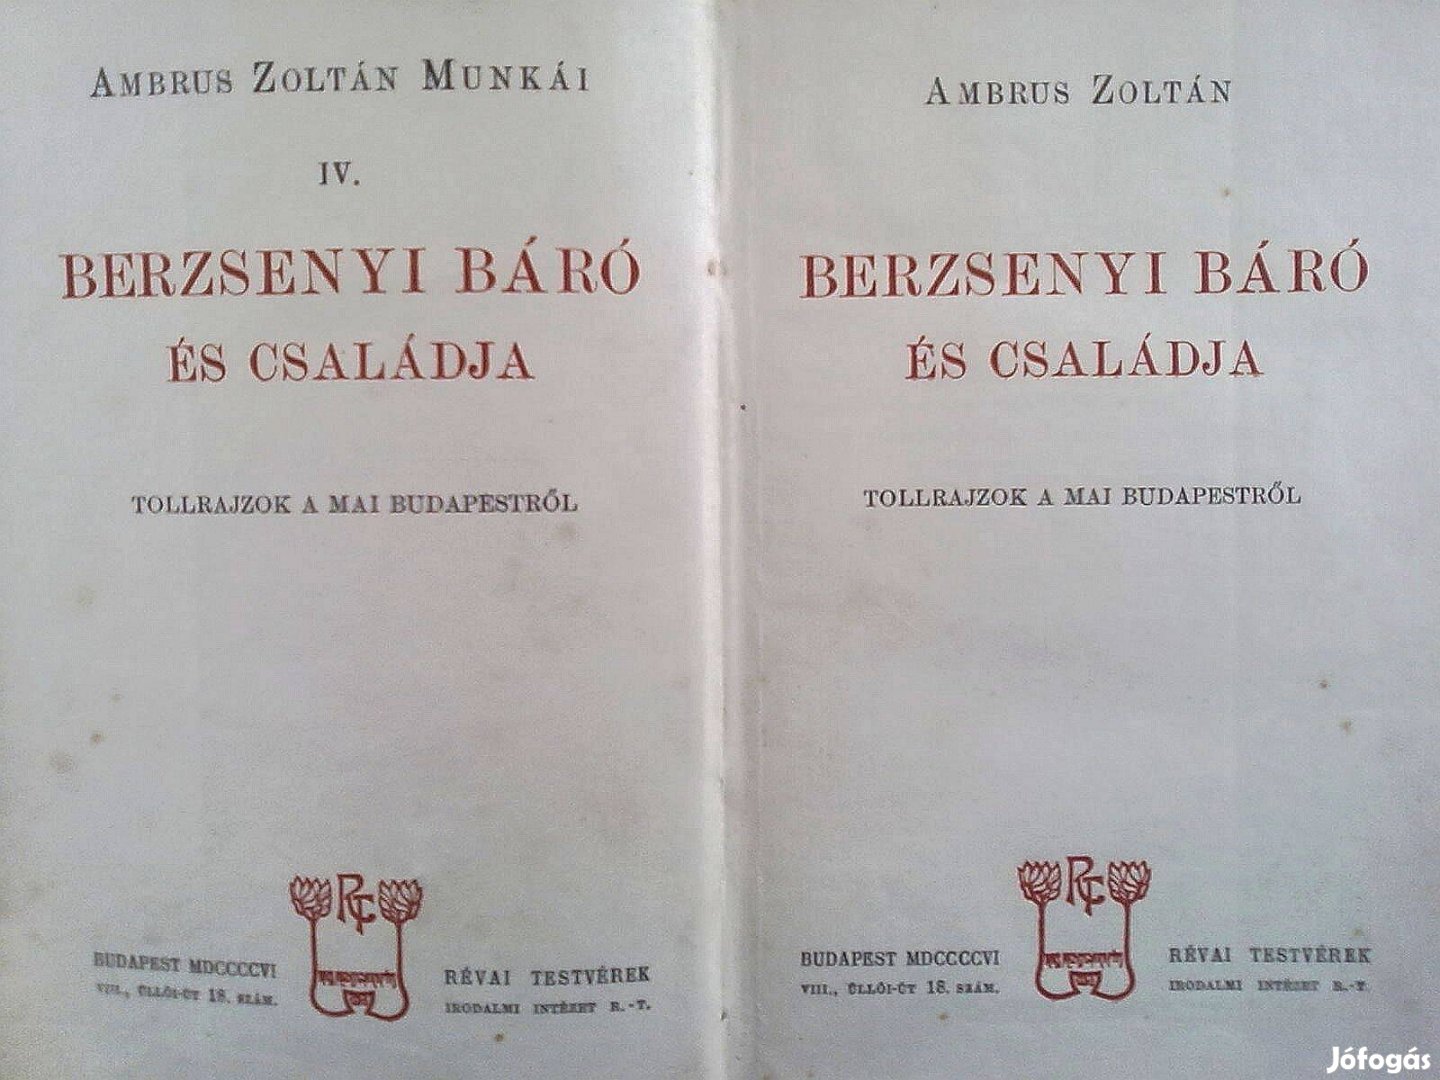 Berzsenyi báró és családja - Tollrajzok a mai Budapestről (1906-os )